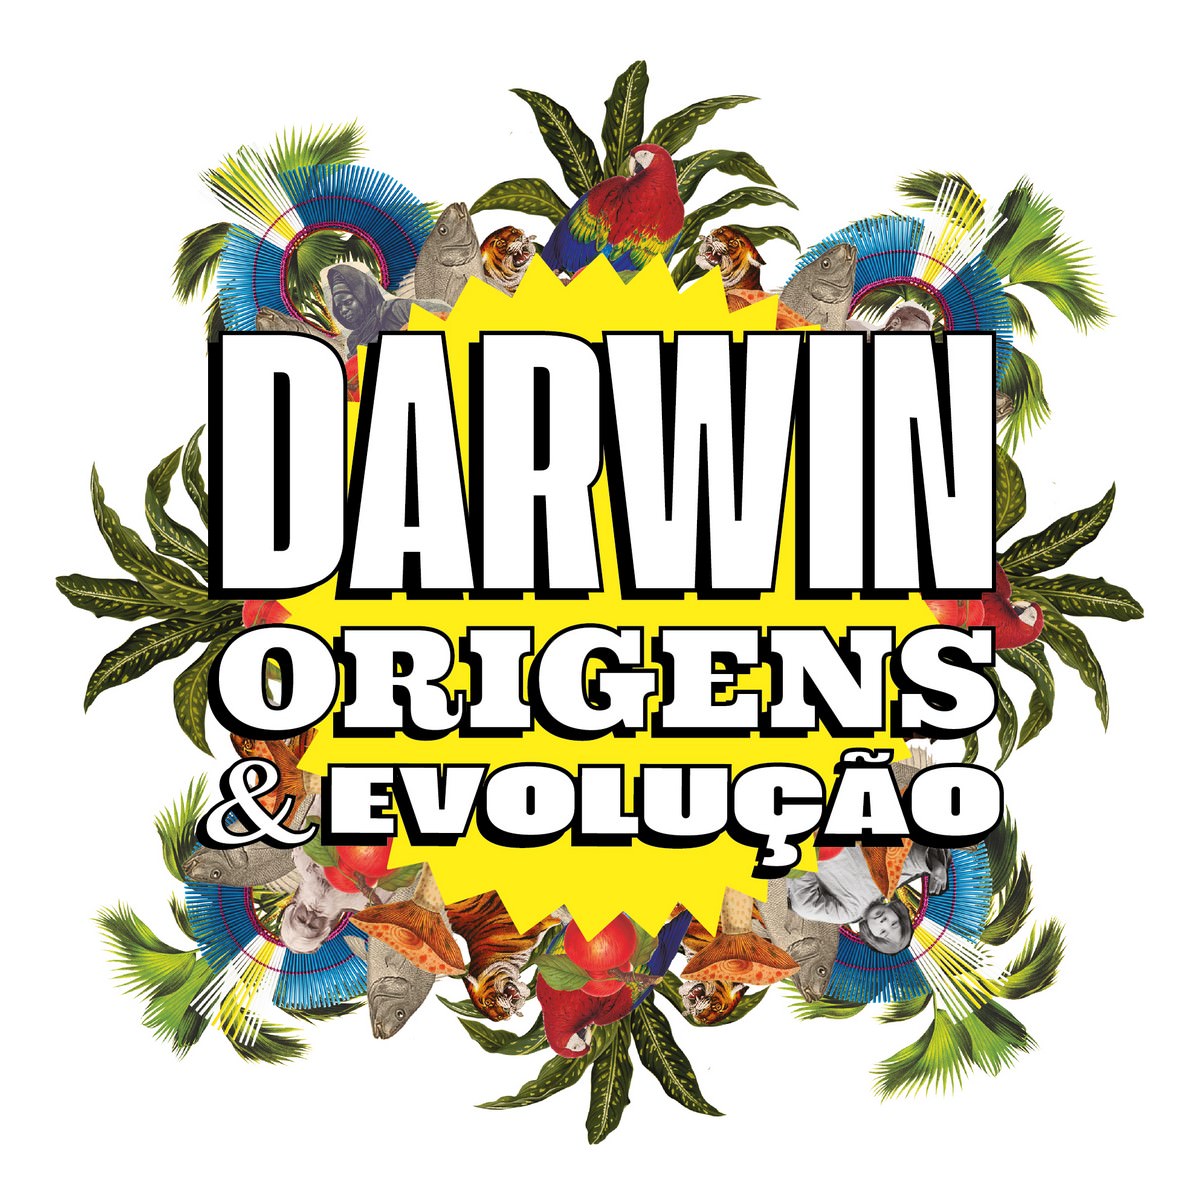 Έκθεση "Δαρβίνος - Προέλευση & Εξέλιξη & quot;, σύντομα. Αποκάλυψη.